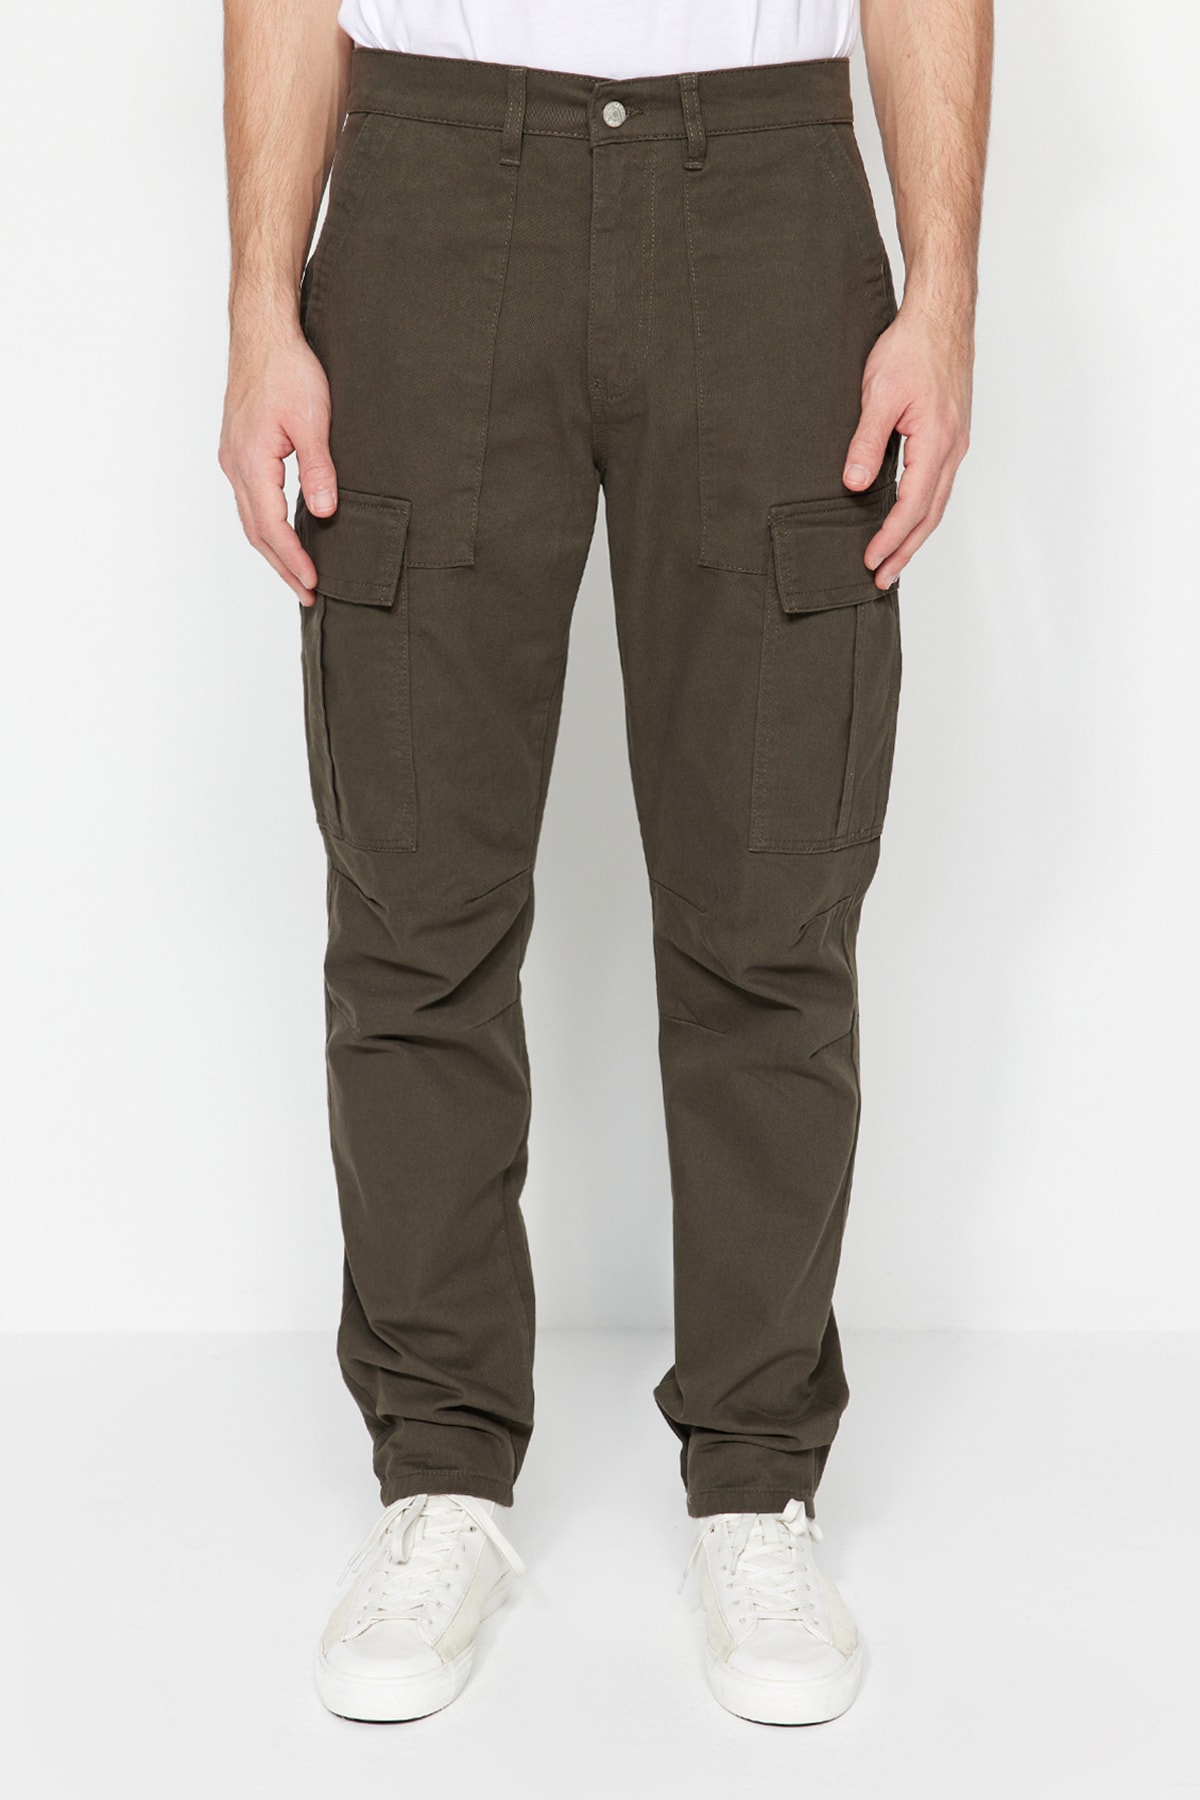 Брюки Trendyol карго, темно-зеленый брюки карго размер 48 зеленый коричневый